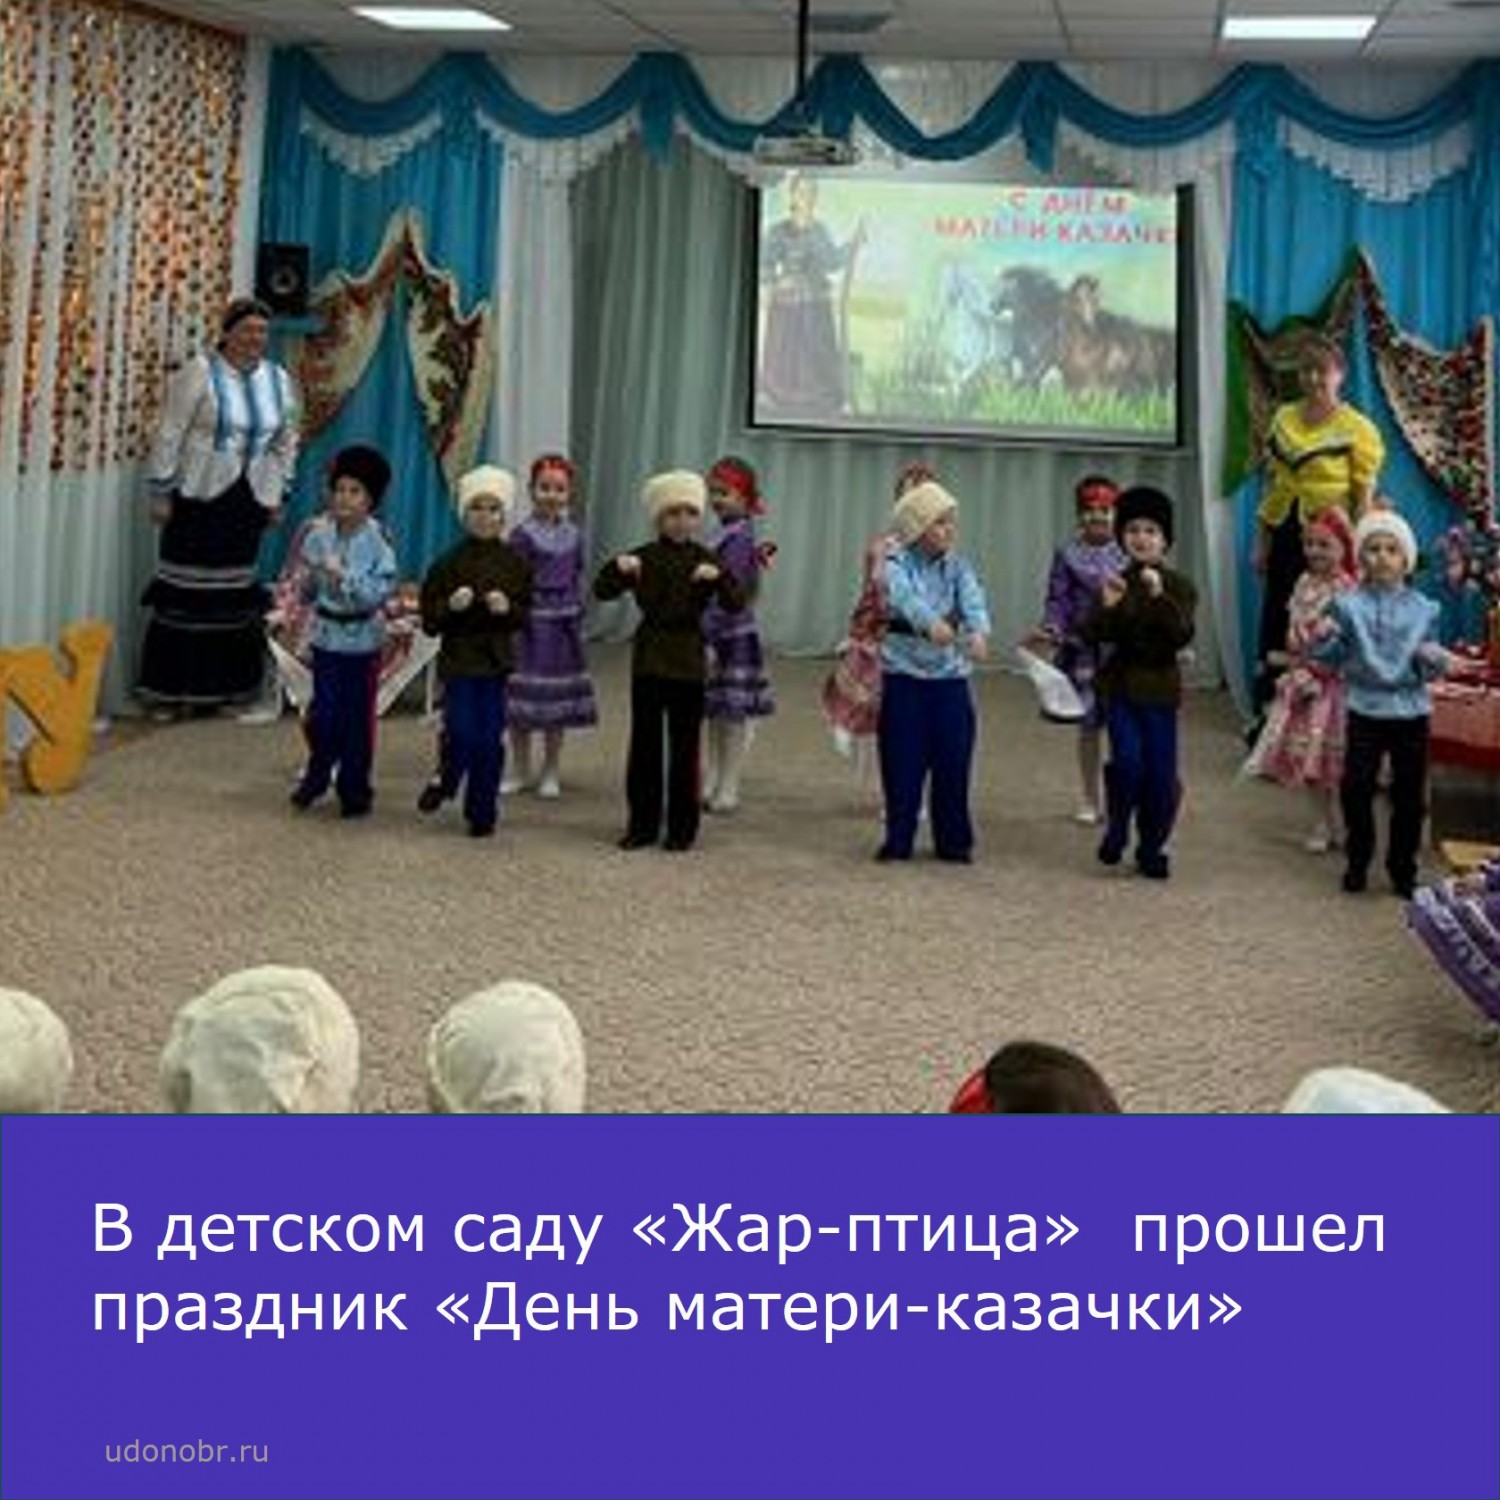 В подготовительной группе «Казачата» детского сада «Жар-птица» прошел праздник «День матери-казачки»